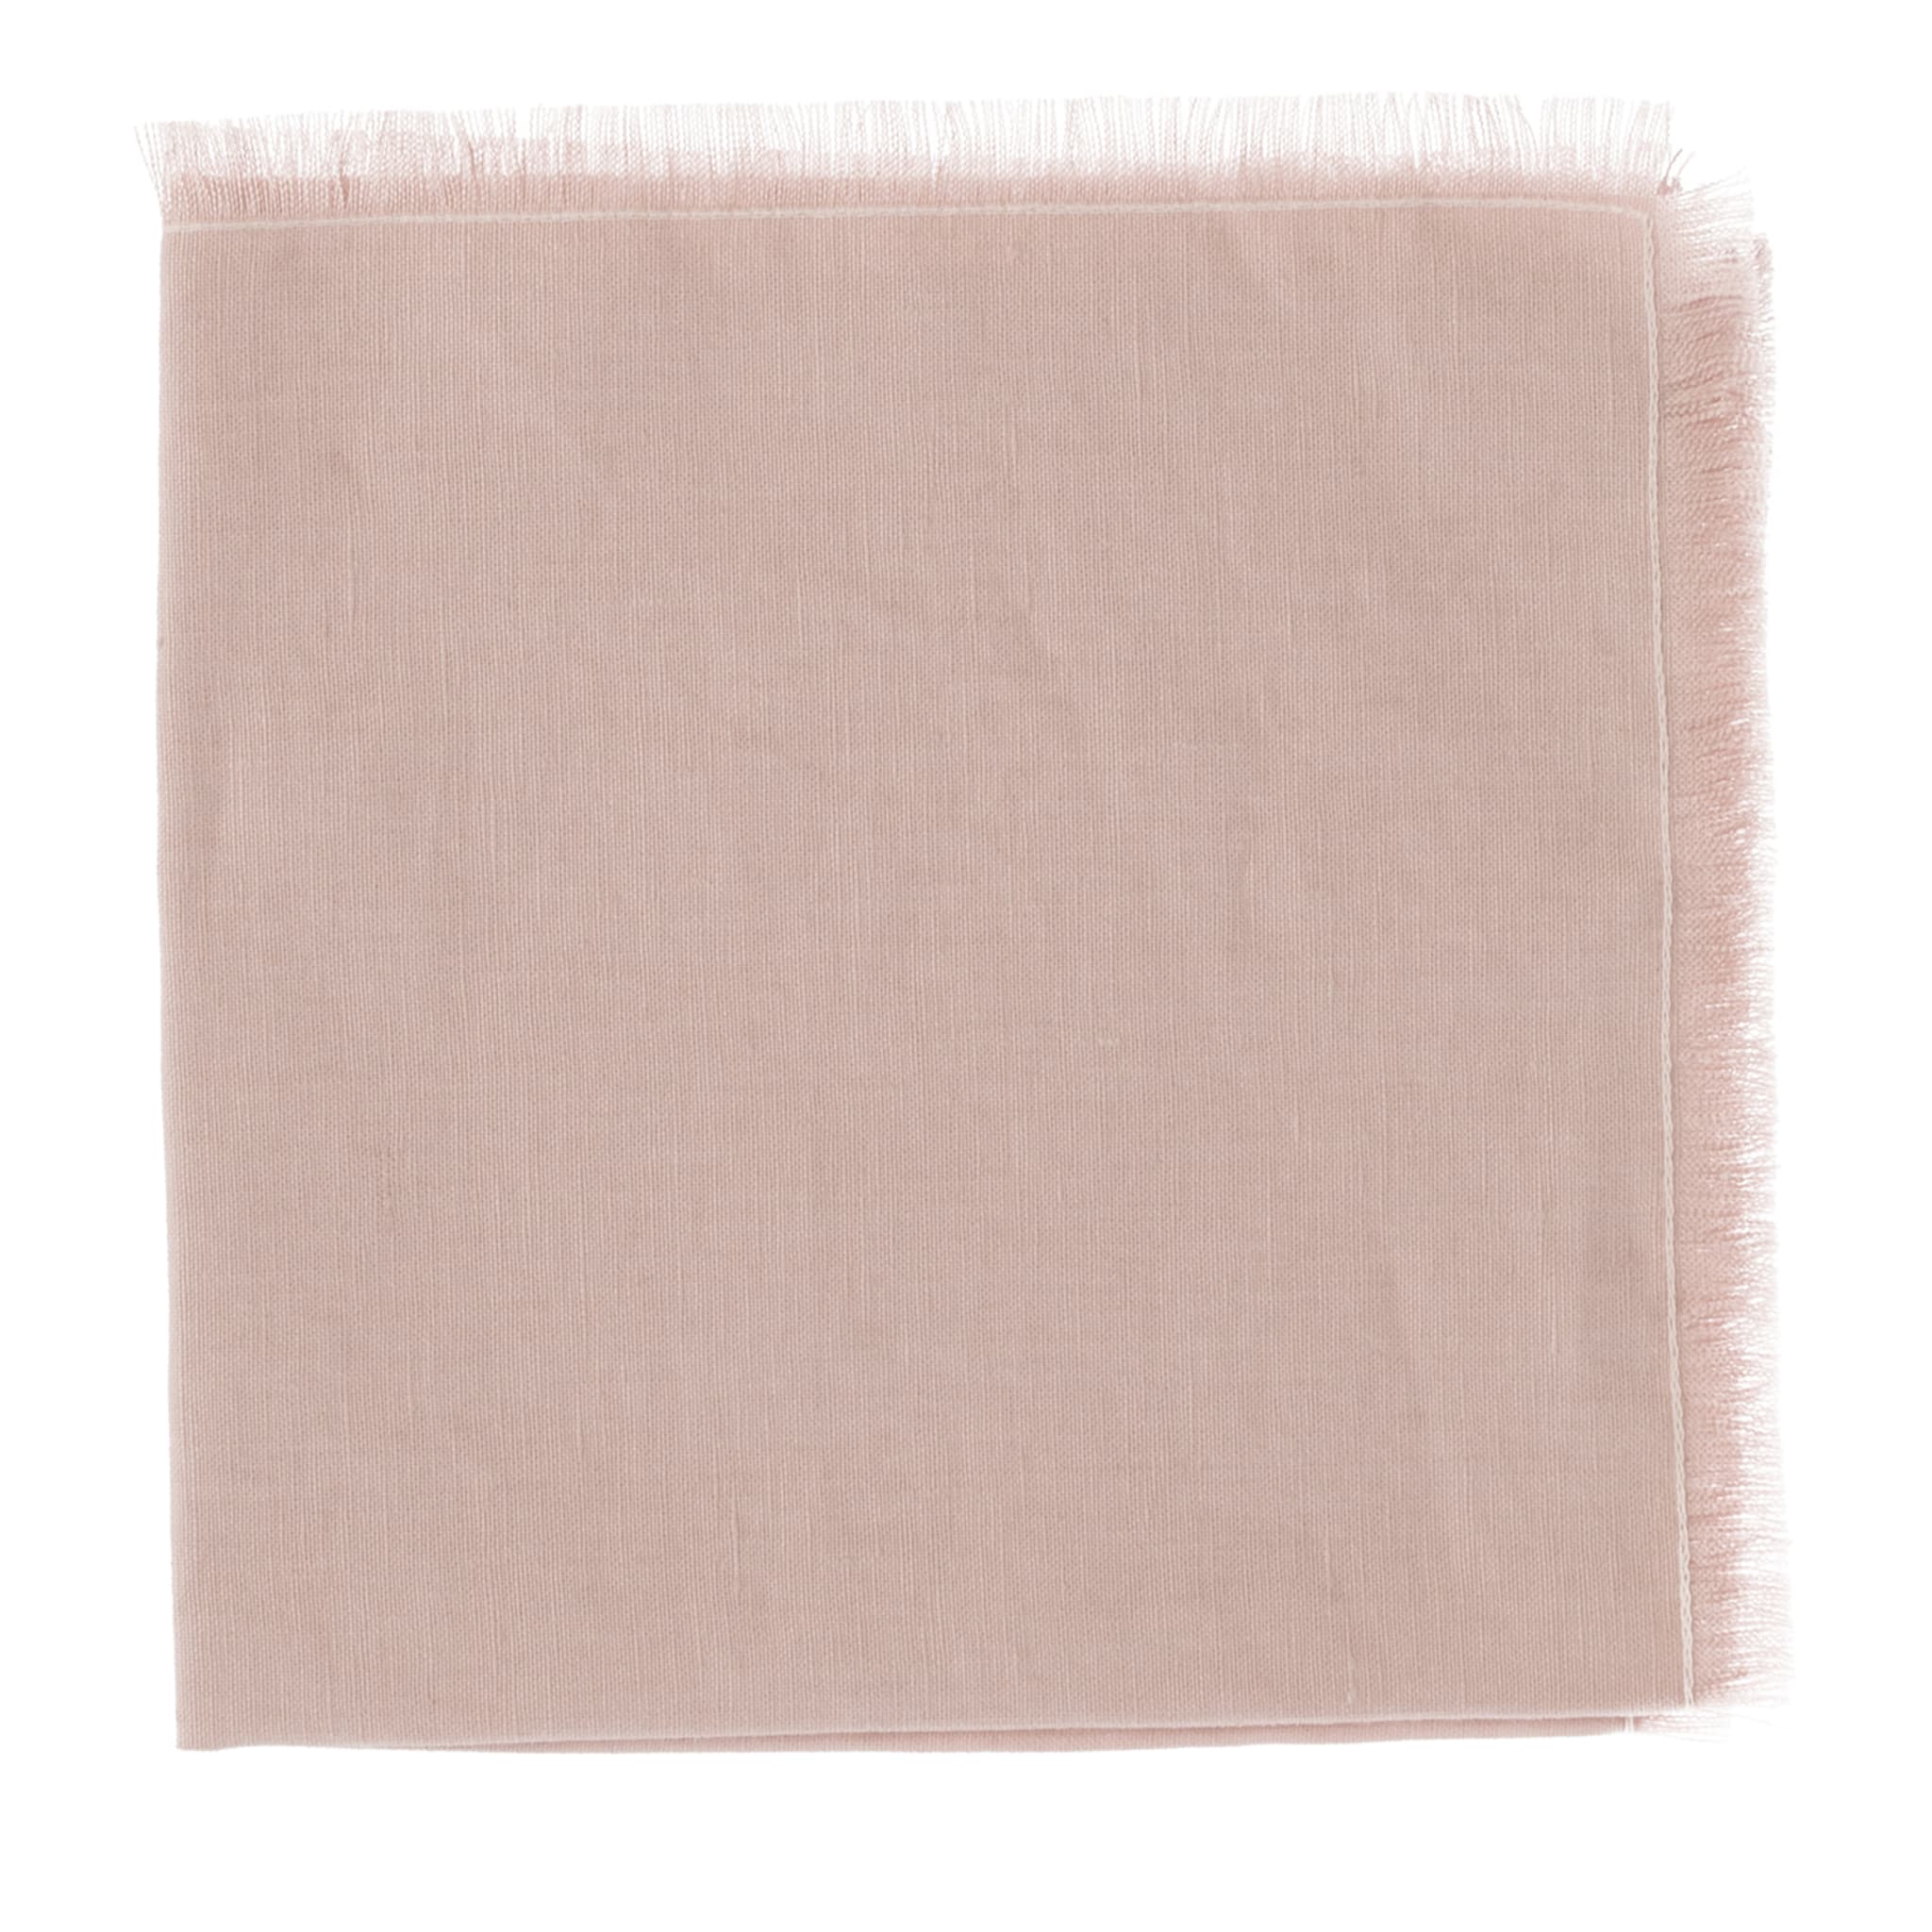  Lot de 4 serviettes de table de luxe en lin pur argenté et rose, tressées à la main - Vue principale